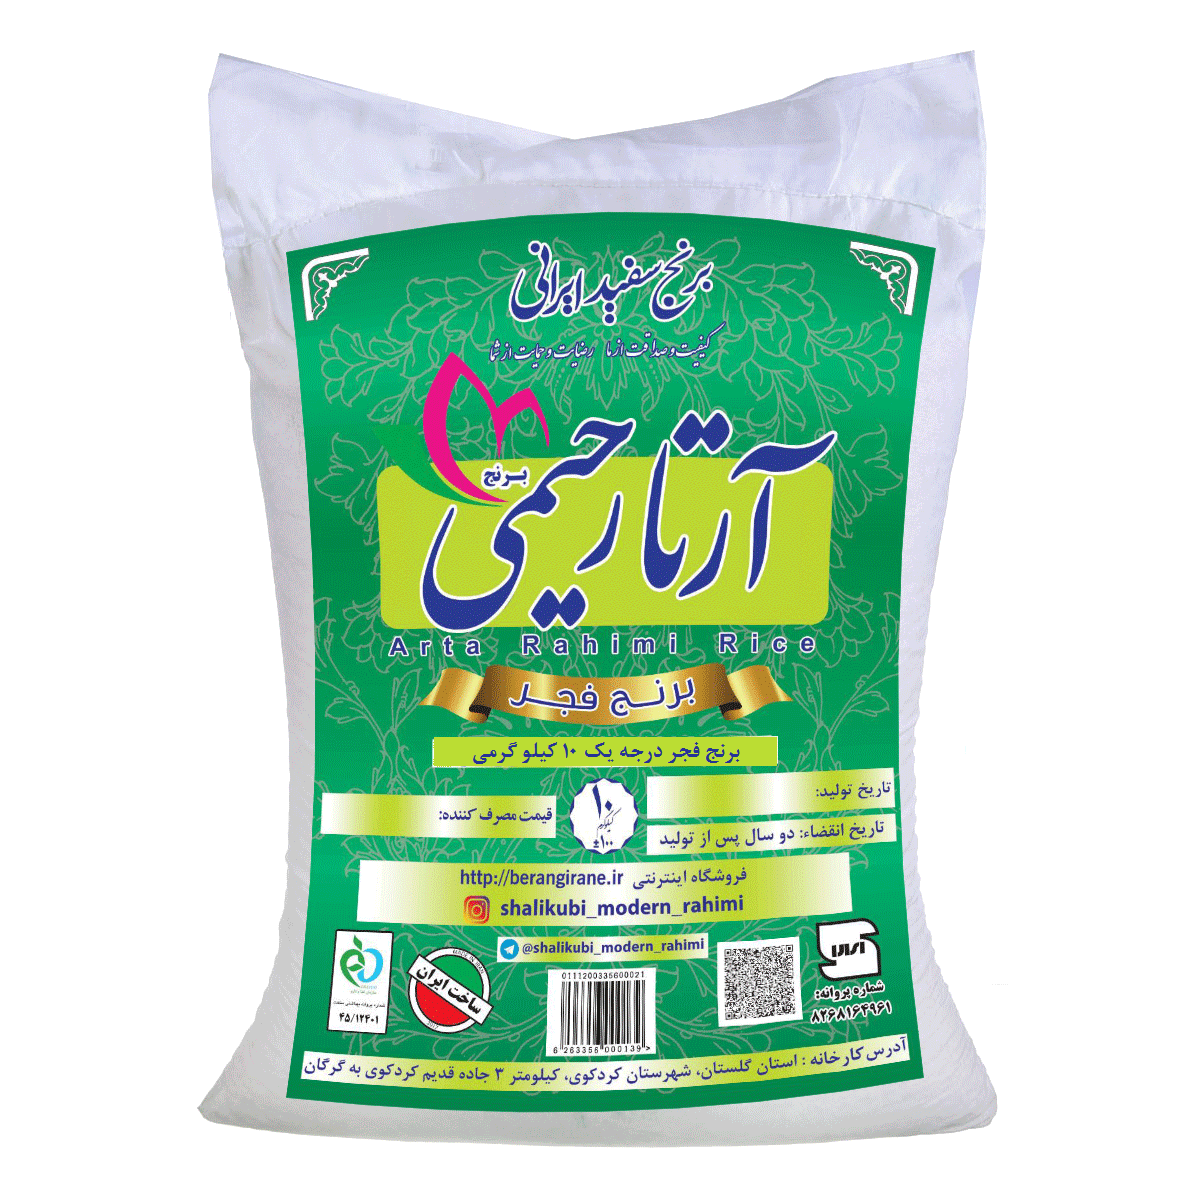 معطرترین برنج ایرانی کدام است؟